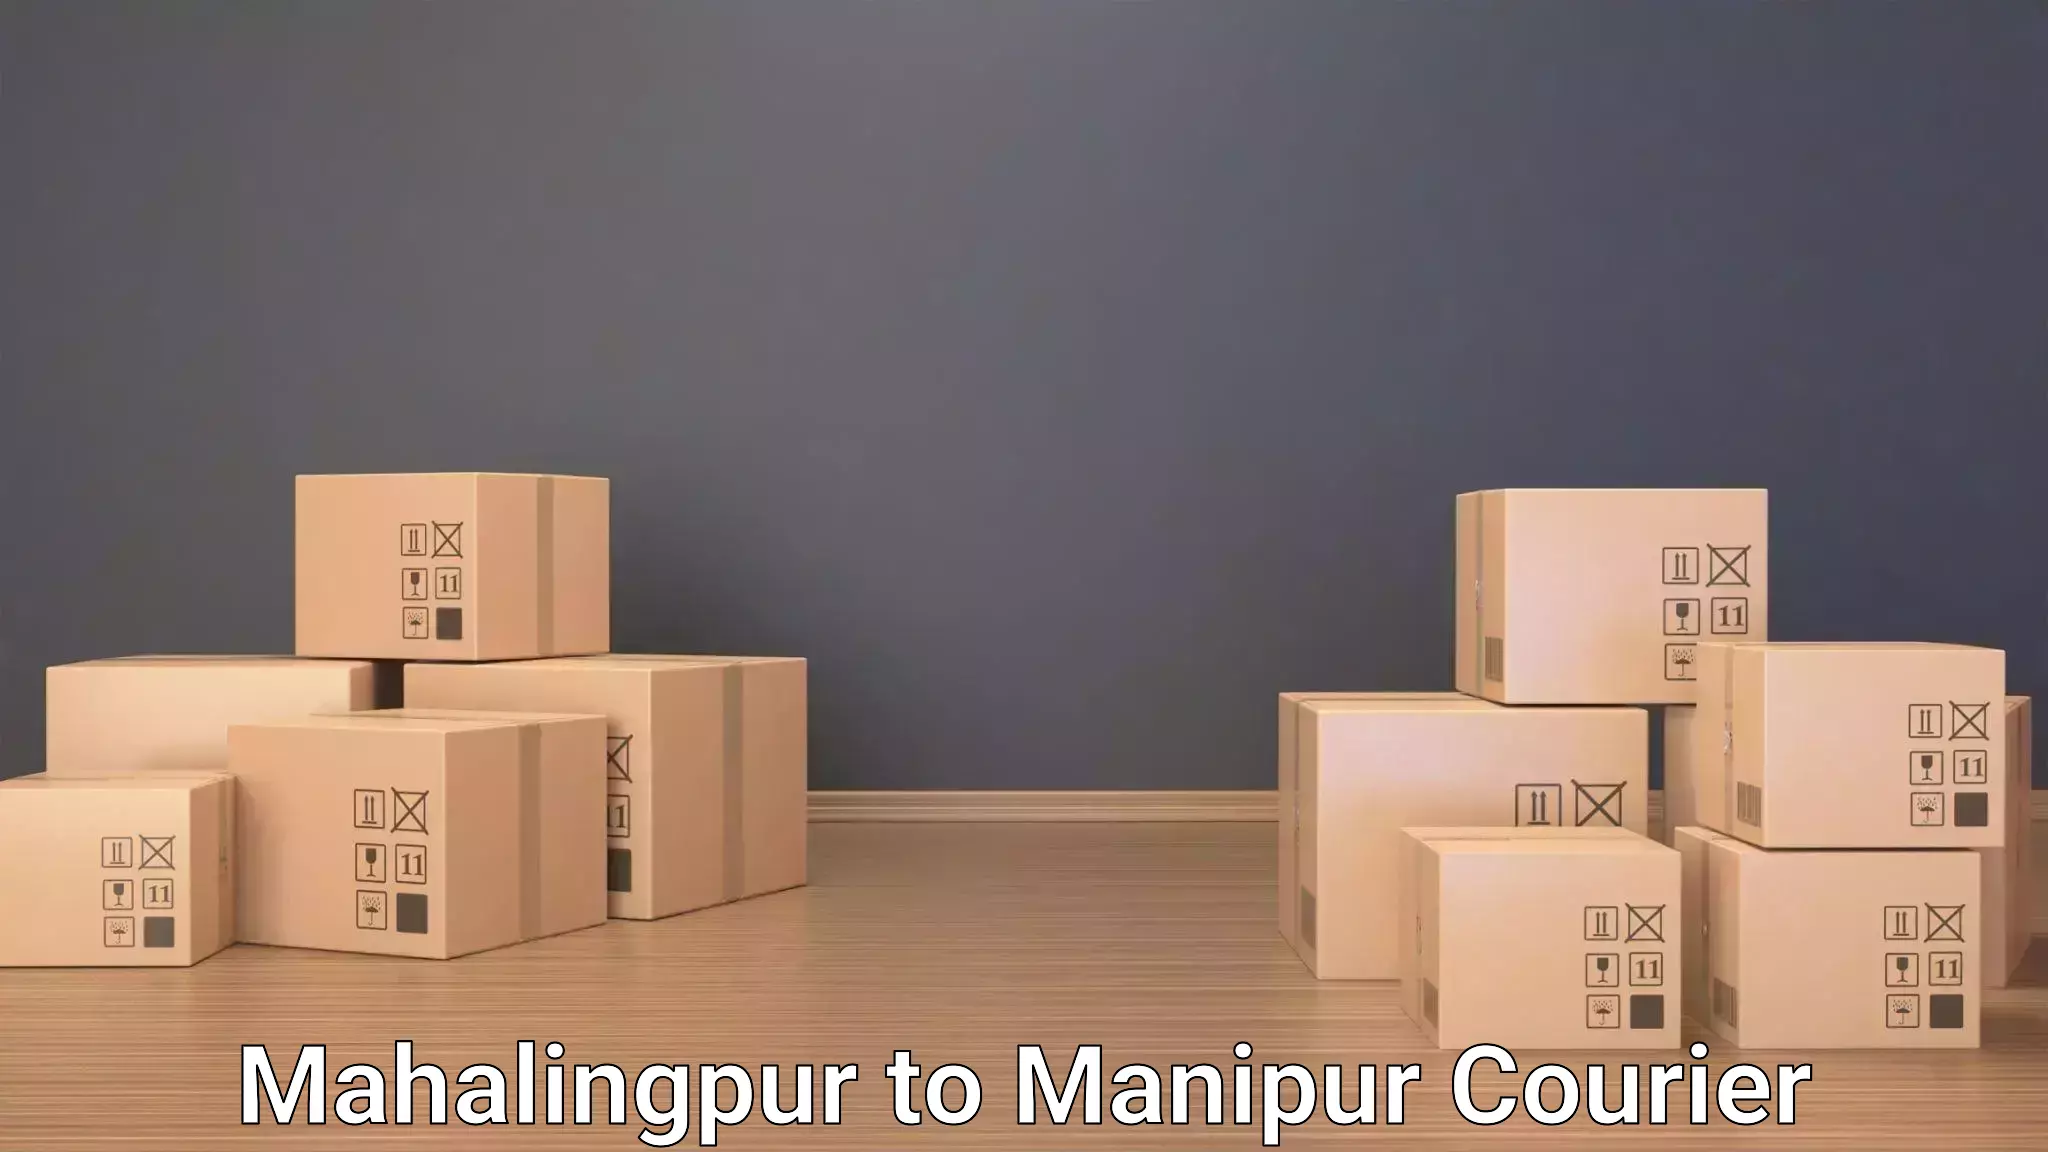 Baggage shipping experts Mahalingpur to Chandel